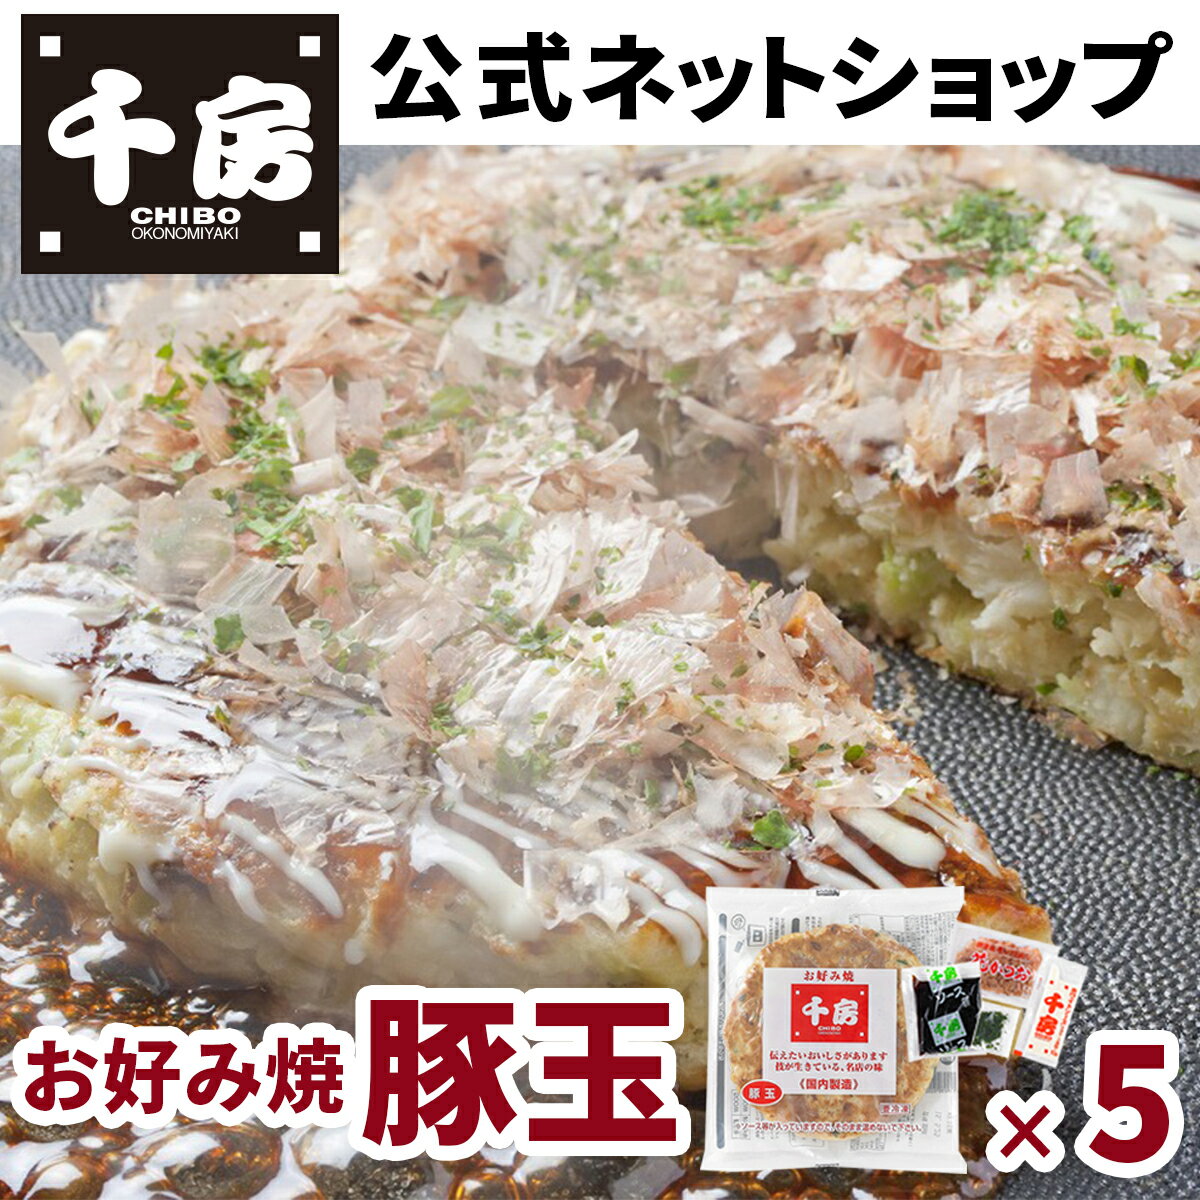 【千房公式】お好み焼豚玉 5枚 冷凍 レンジで簡単 本場大阪の味 自宅用